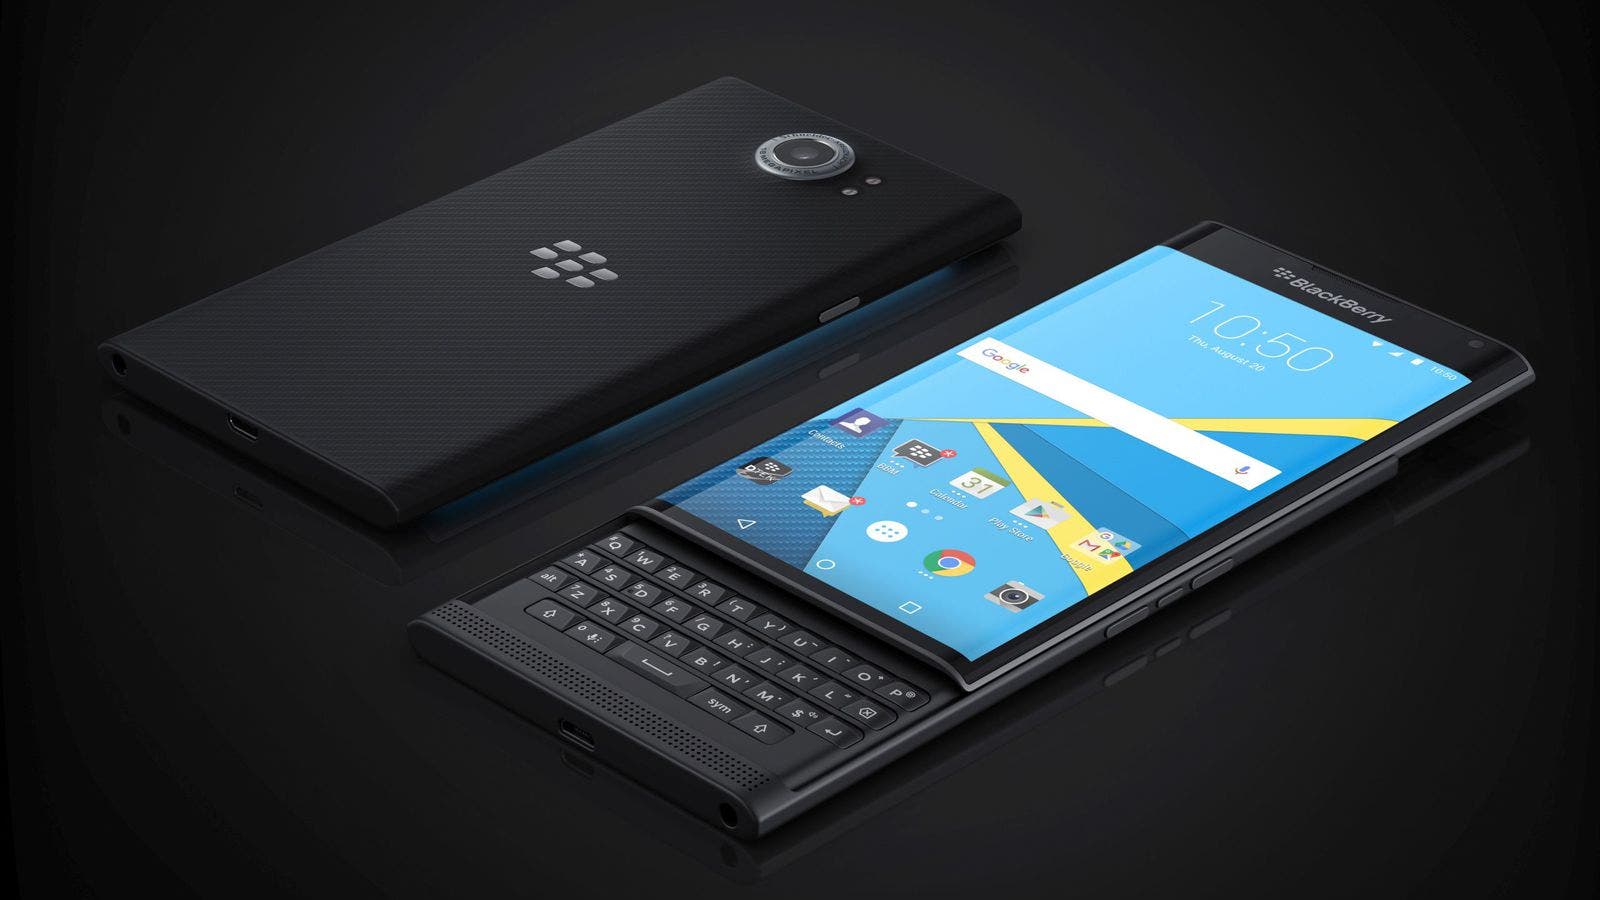 BlackBerry lanzará un smartphone sin teclado con IP67 y gran pantalla